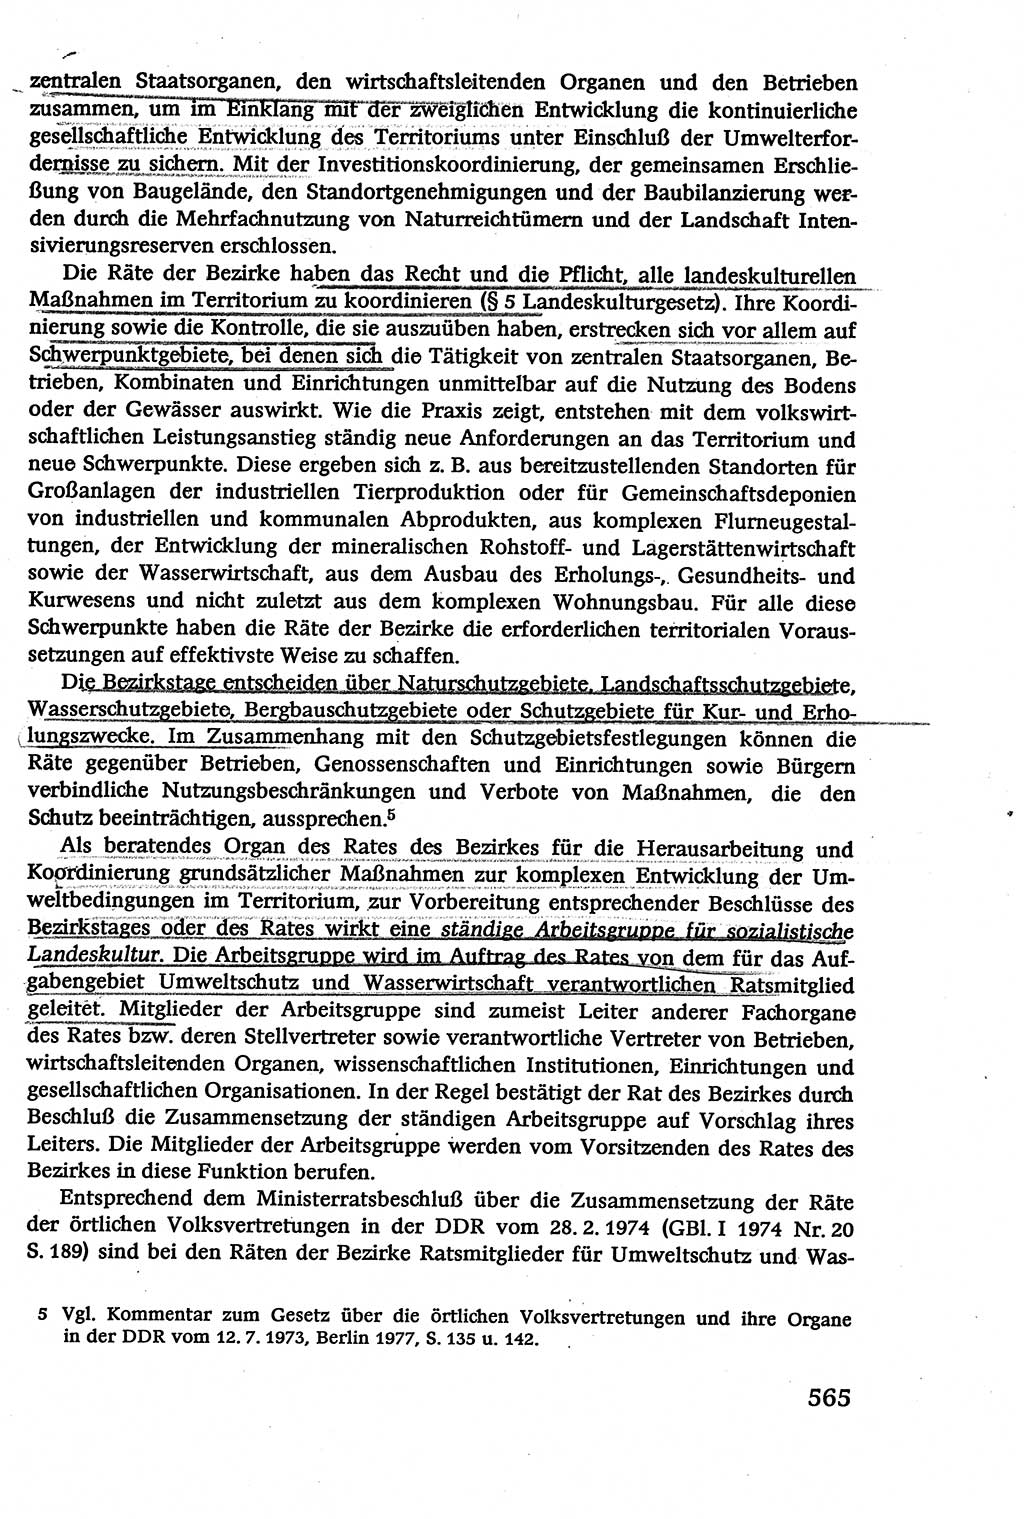 Verwaltungsrecht [Deutsche Demokratische Republik (DDR)], Lehrbuch 1979, Seite 565 (Verw.-R. DDR Lb. 1979, S. 565)